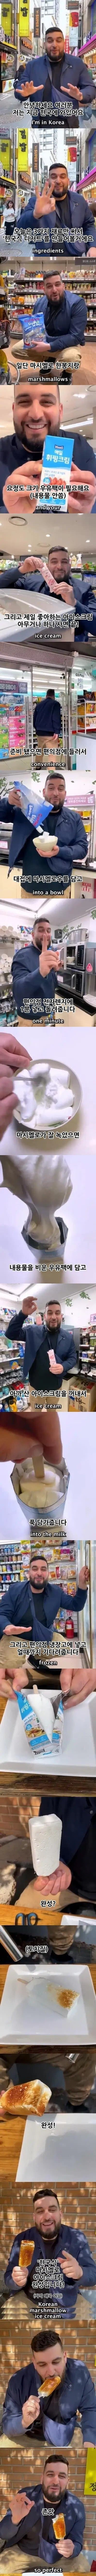 존맛탱 한국식 디저트 만들기